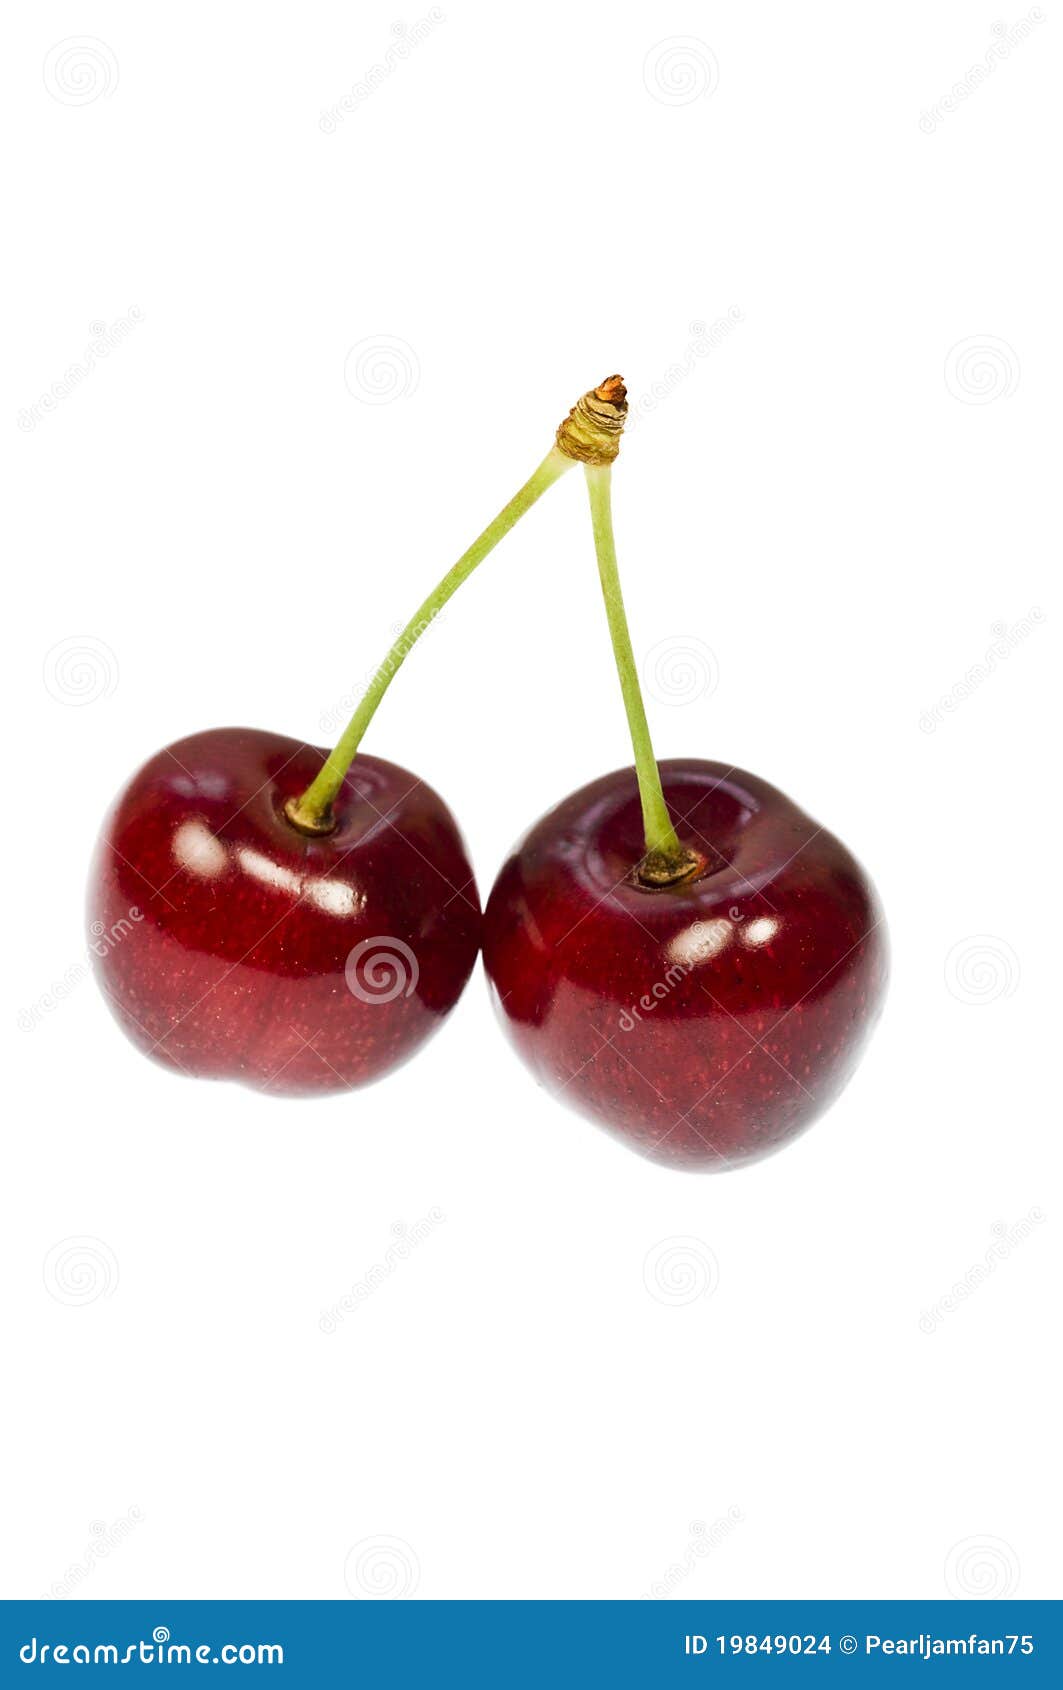 cherry pair